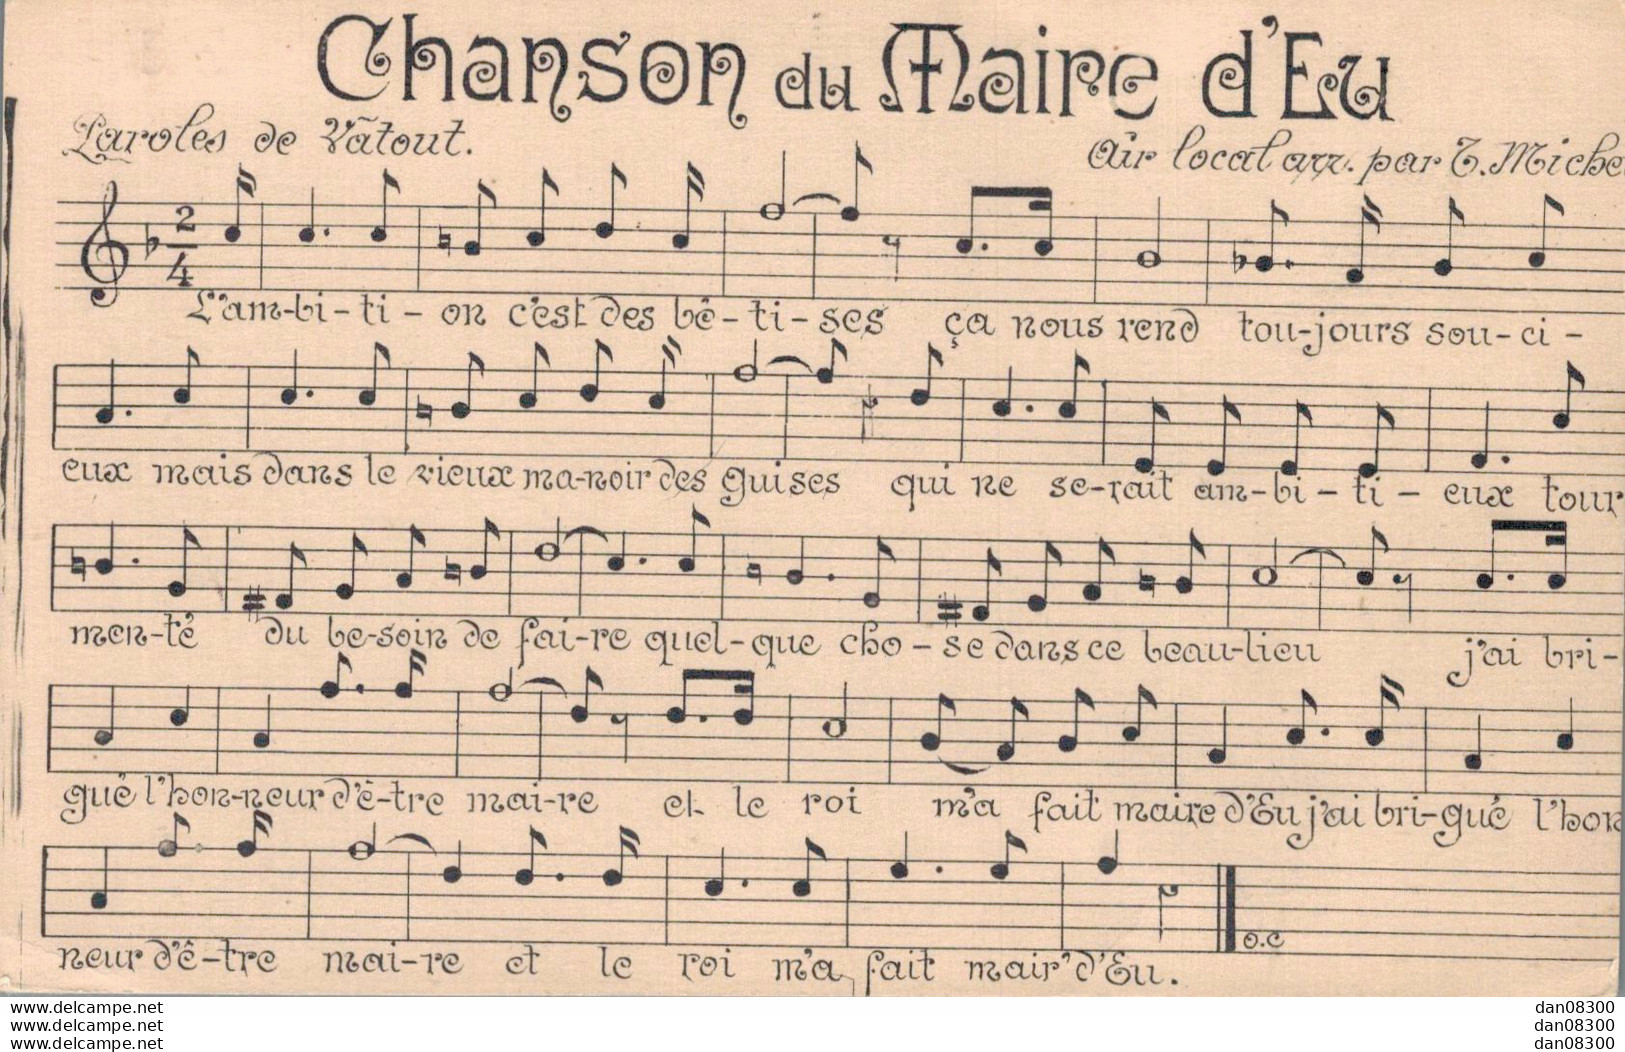 76 CHANSON DU MAIRE D'EU - Musica